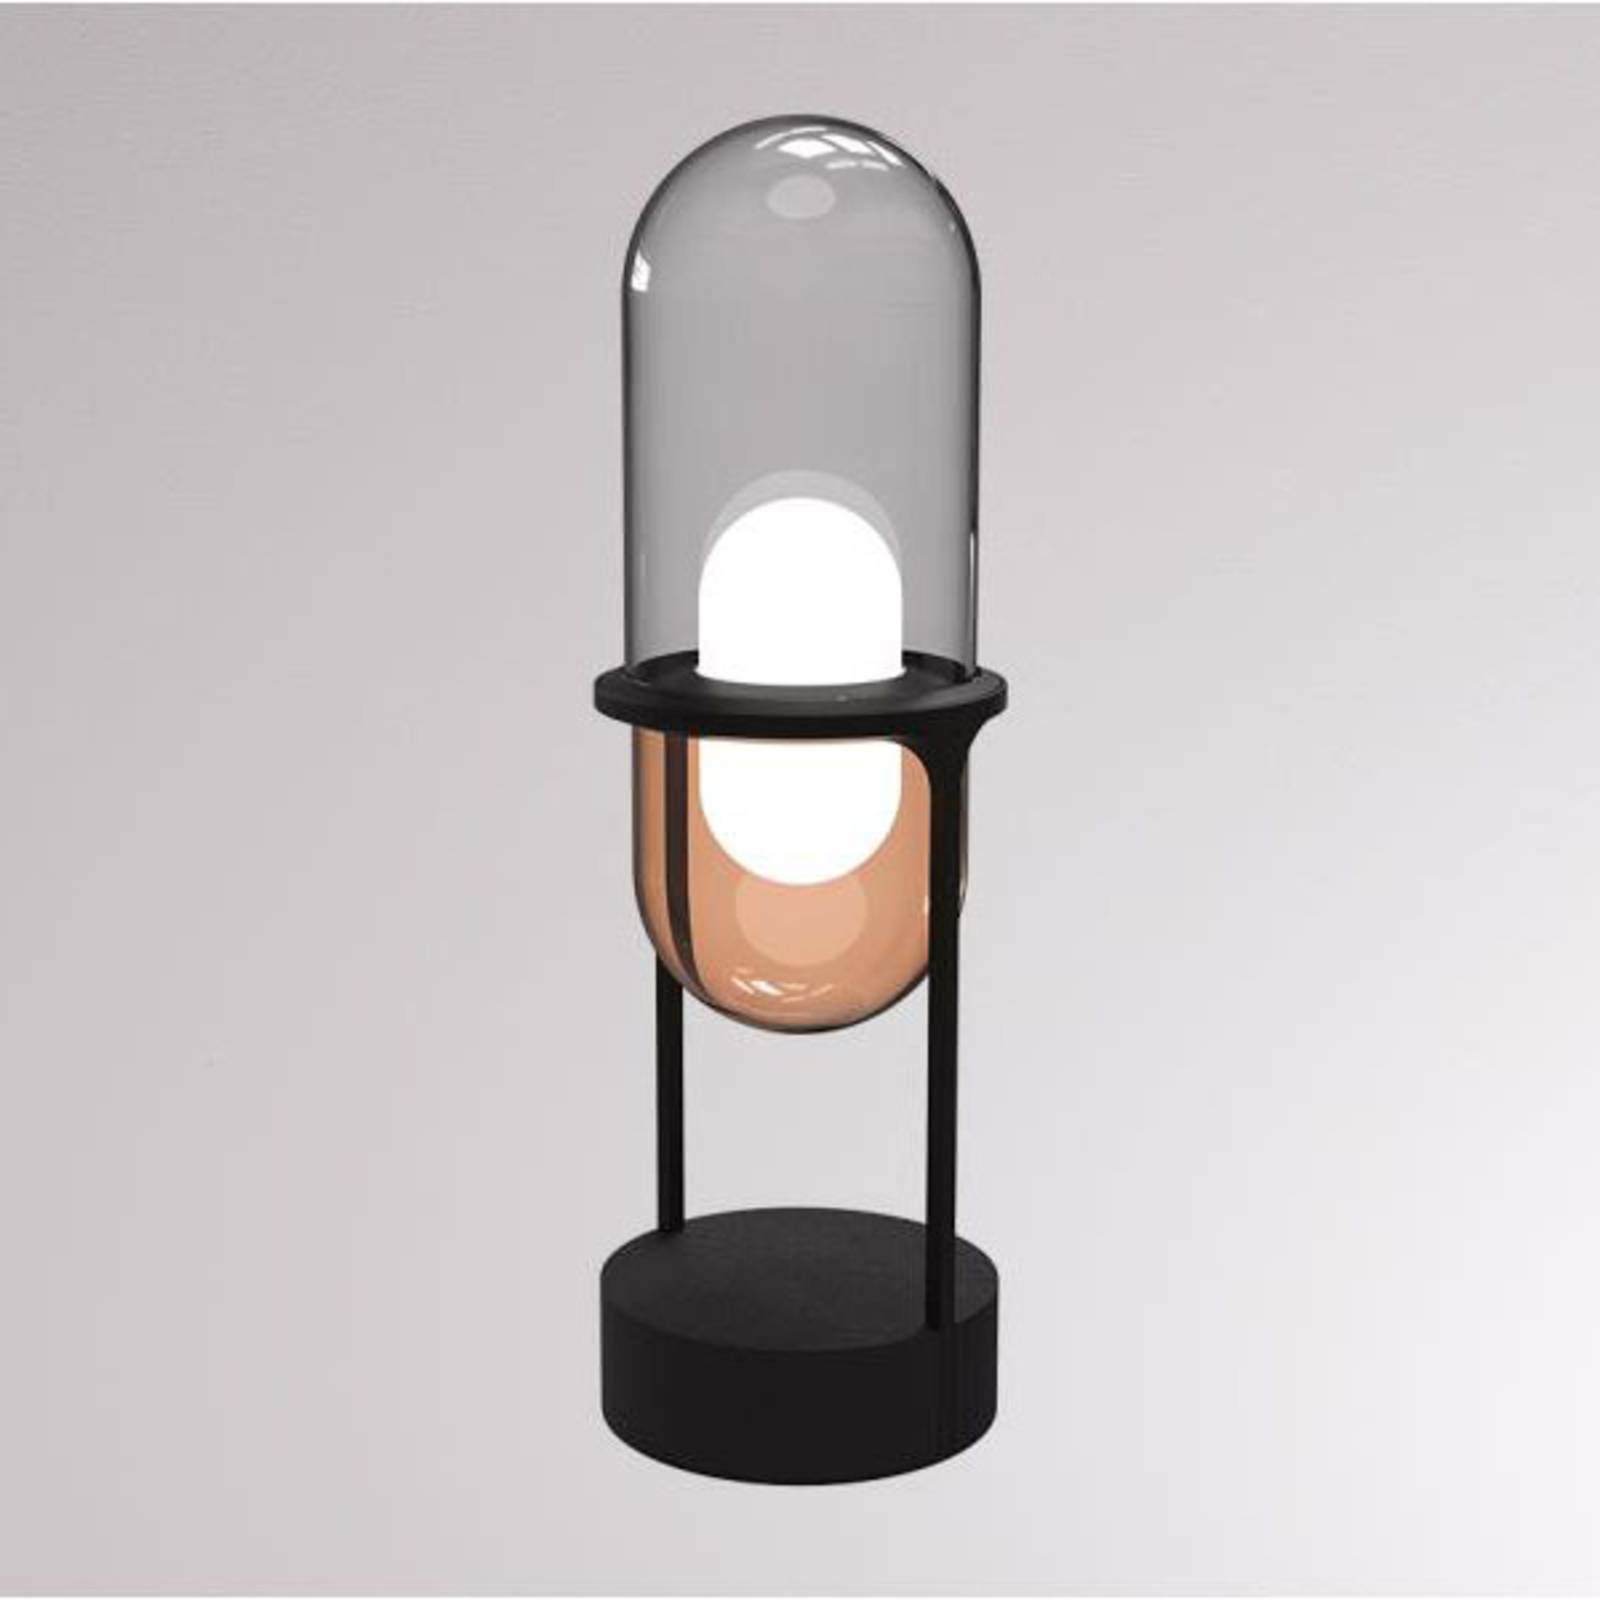 Pille LED tafellamp grijs/koper